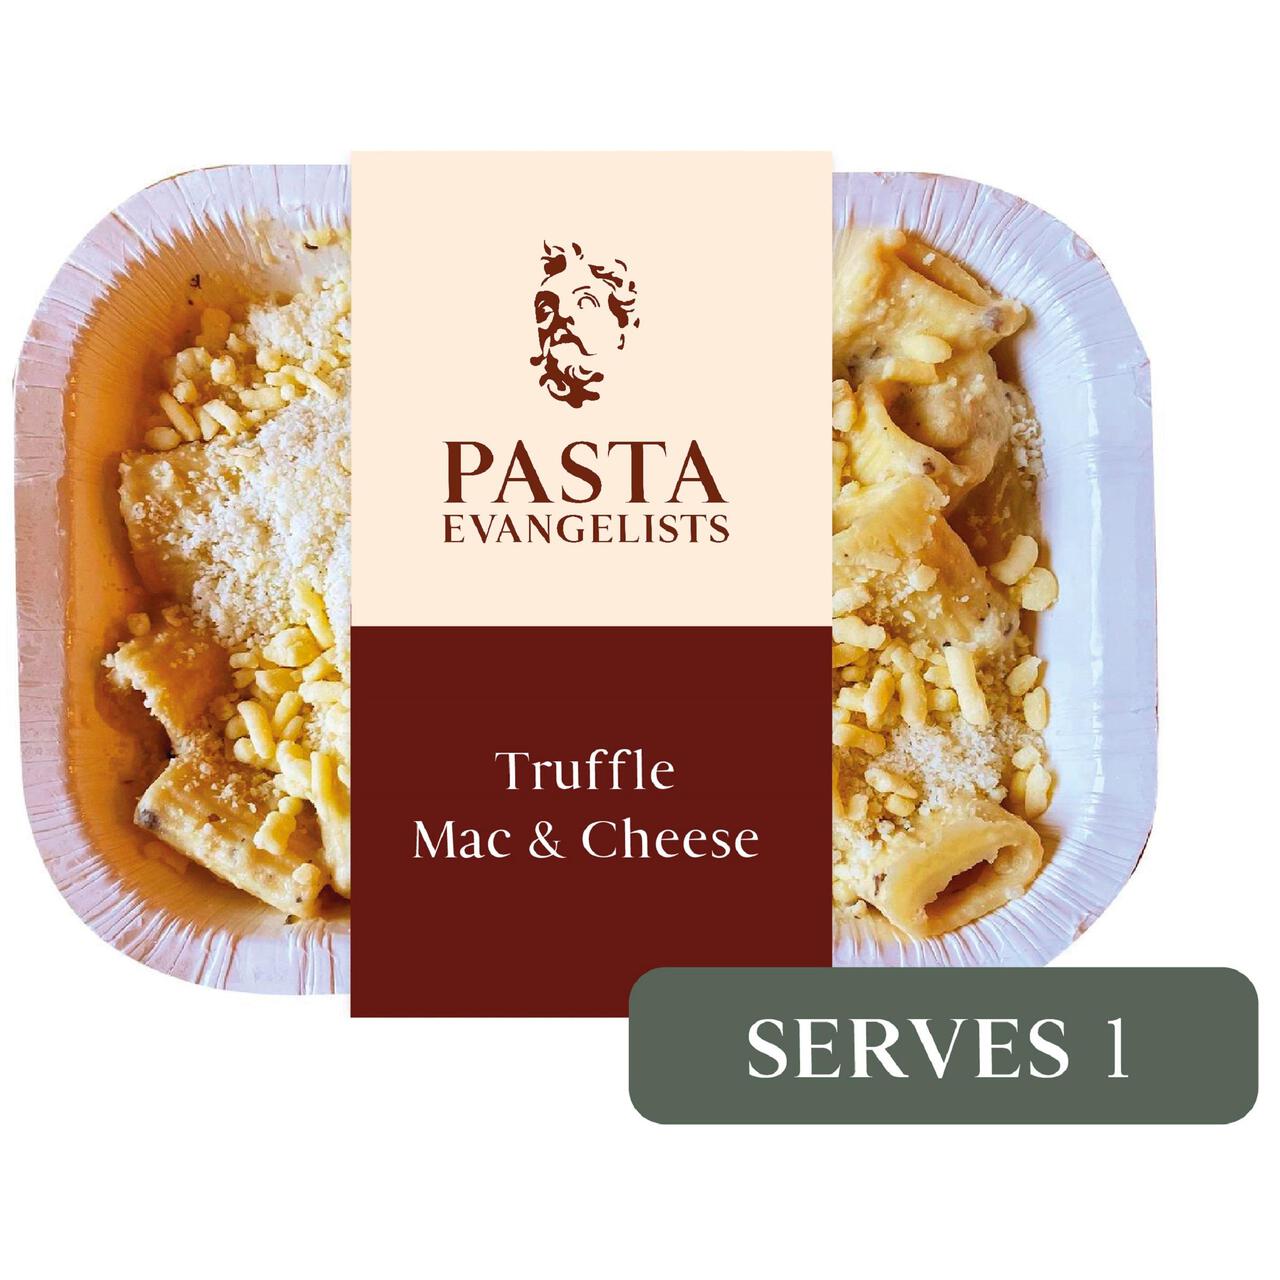 Pasta Evangelists Truffle Mac & Cheese 350g